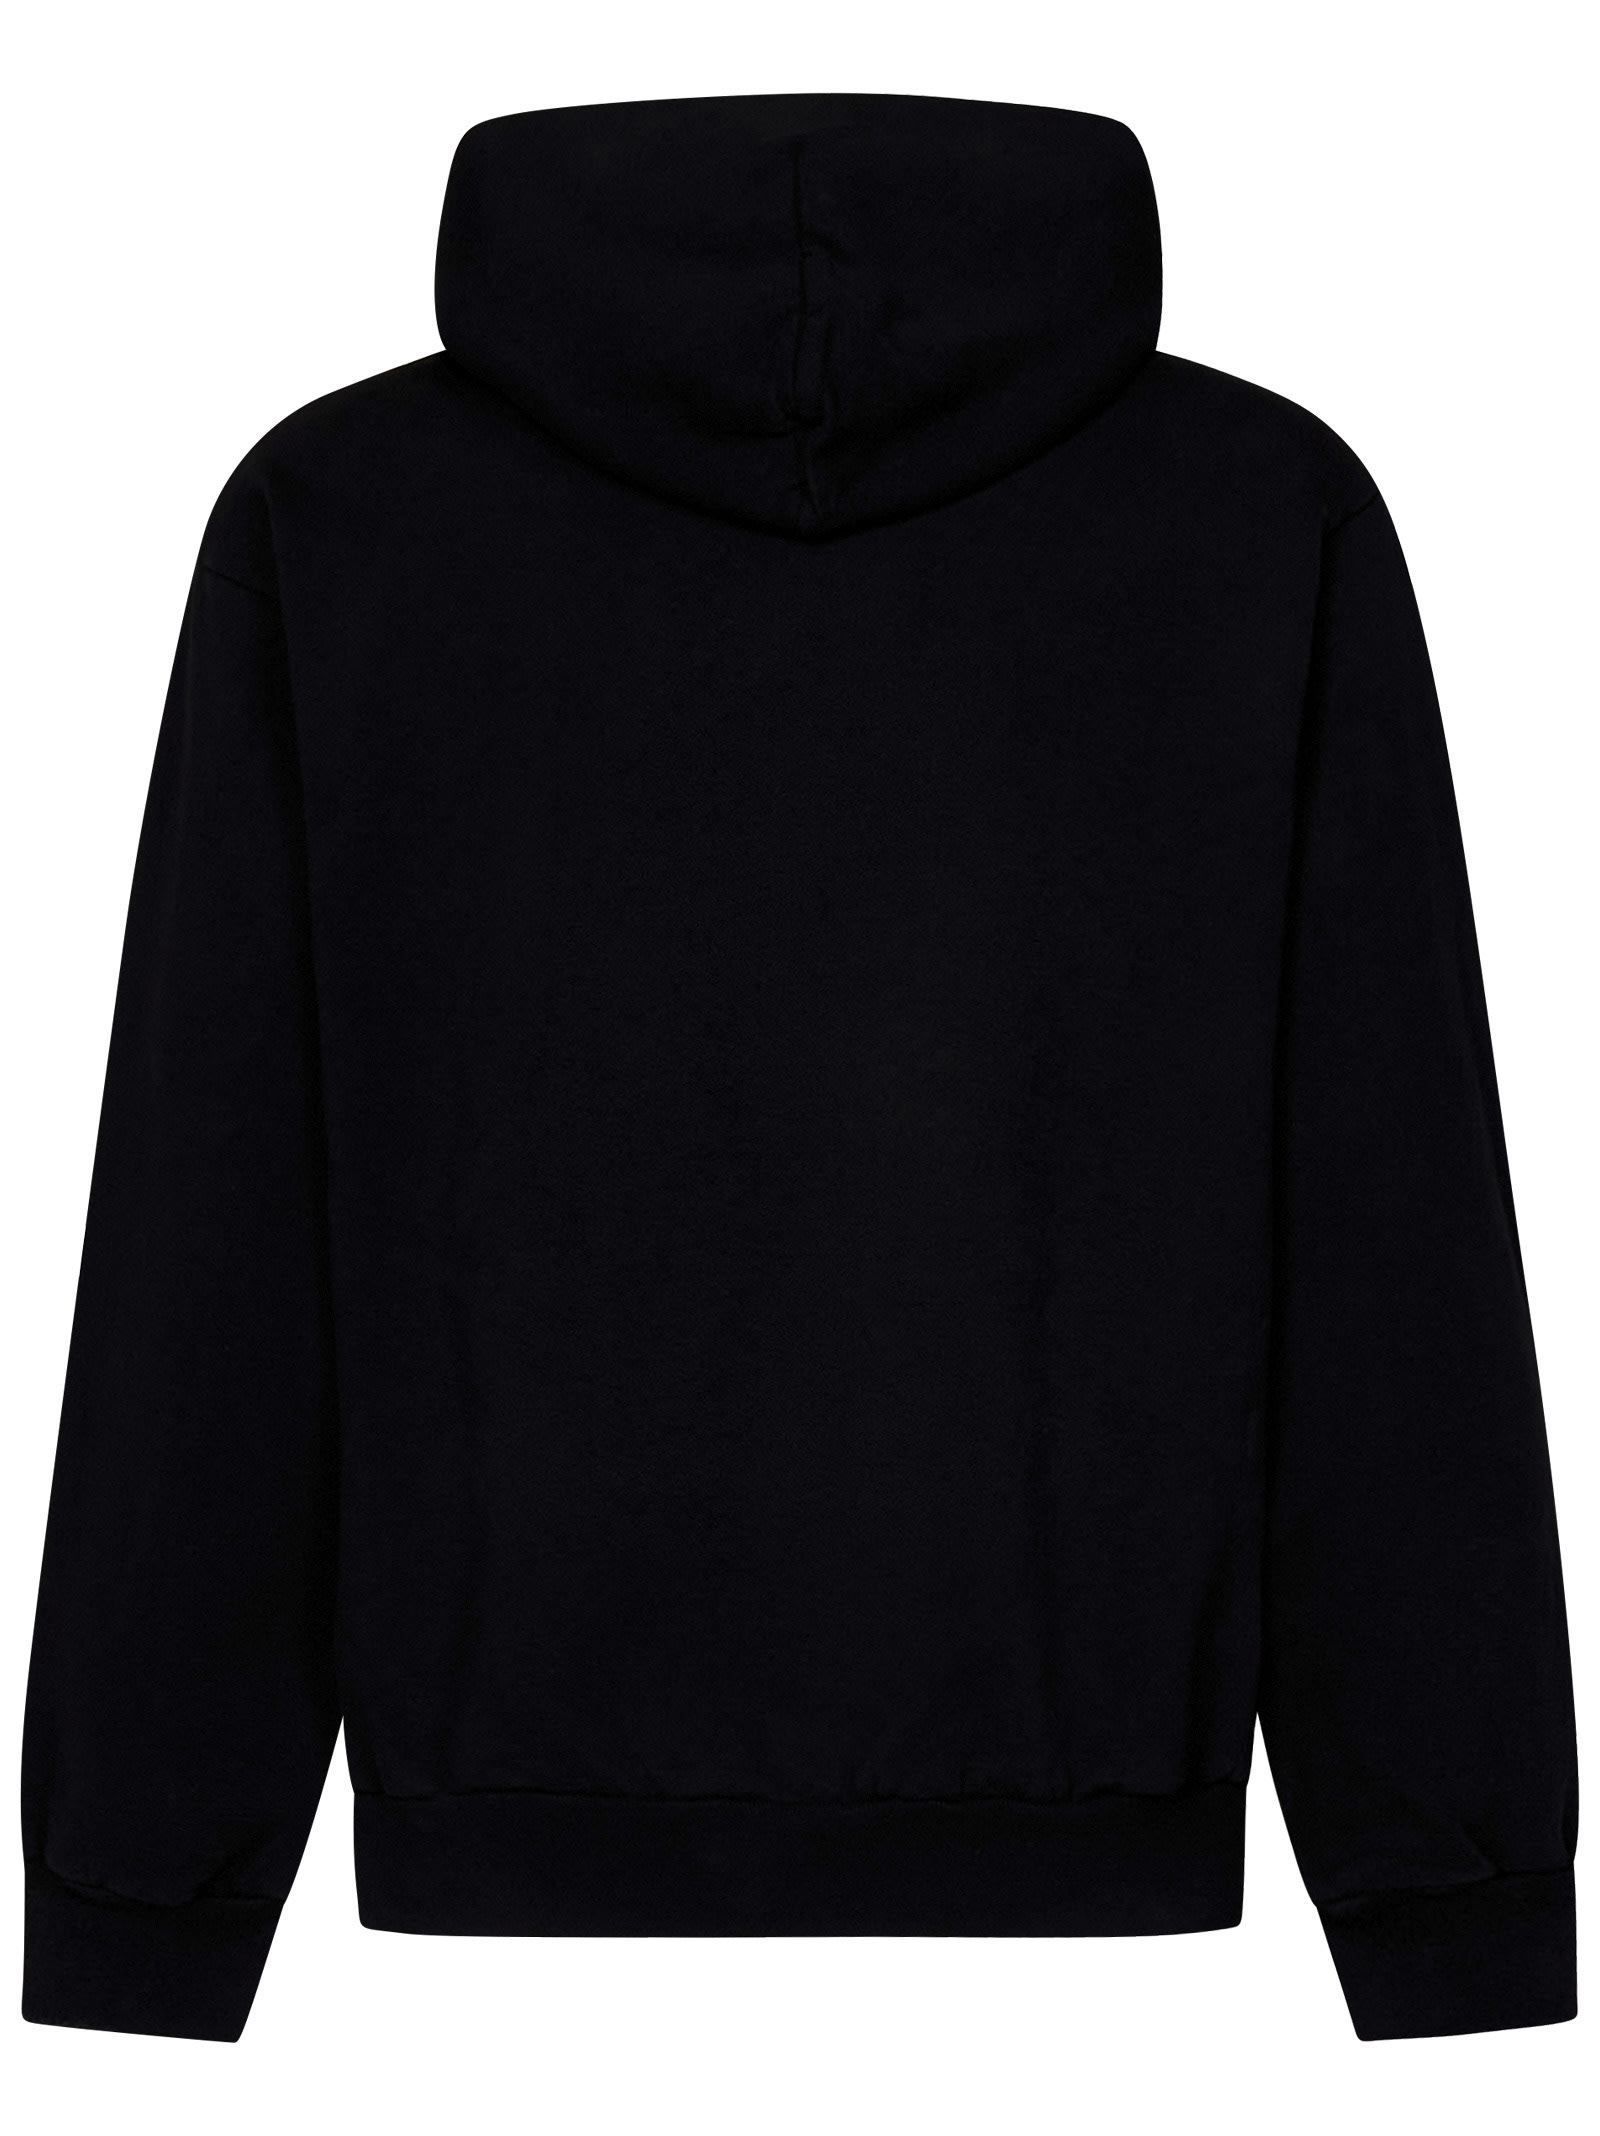 Shop Local Authority Sweatshirt In Black